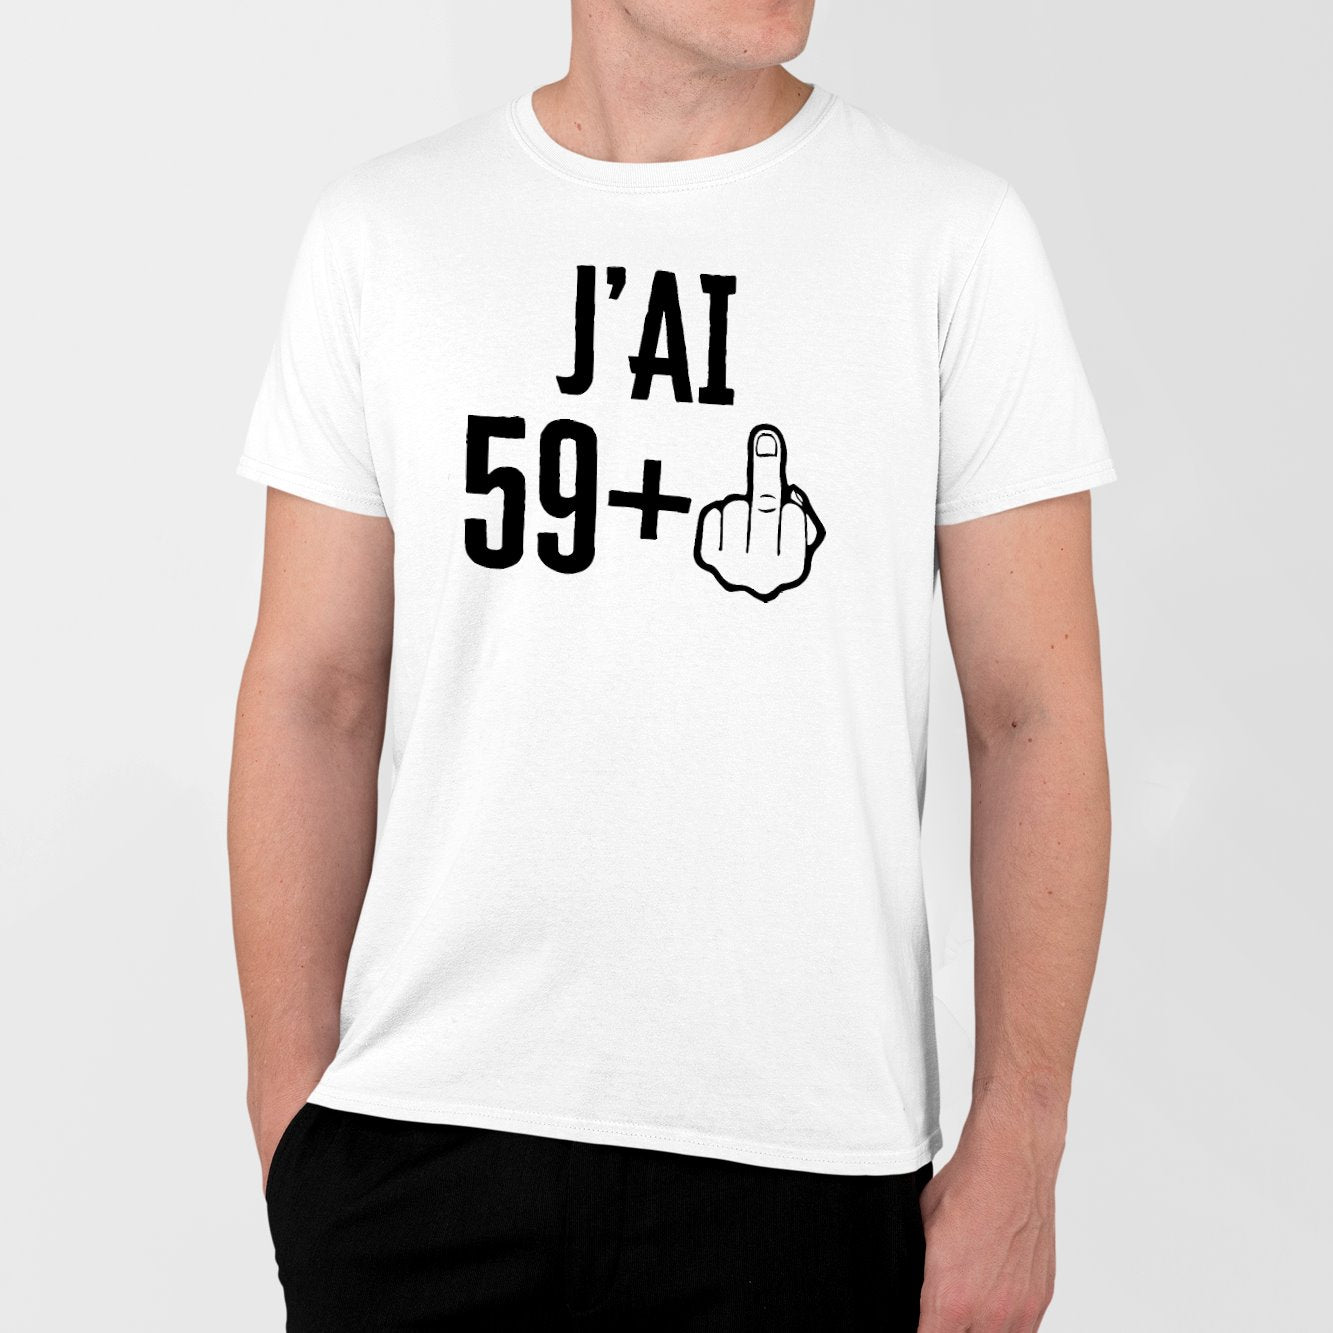 Tee-shirt idée cadeau retraite femme 60 ans